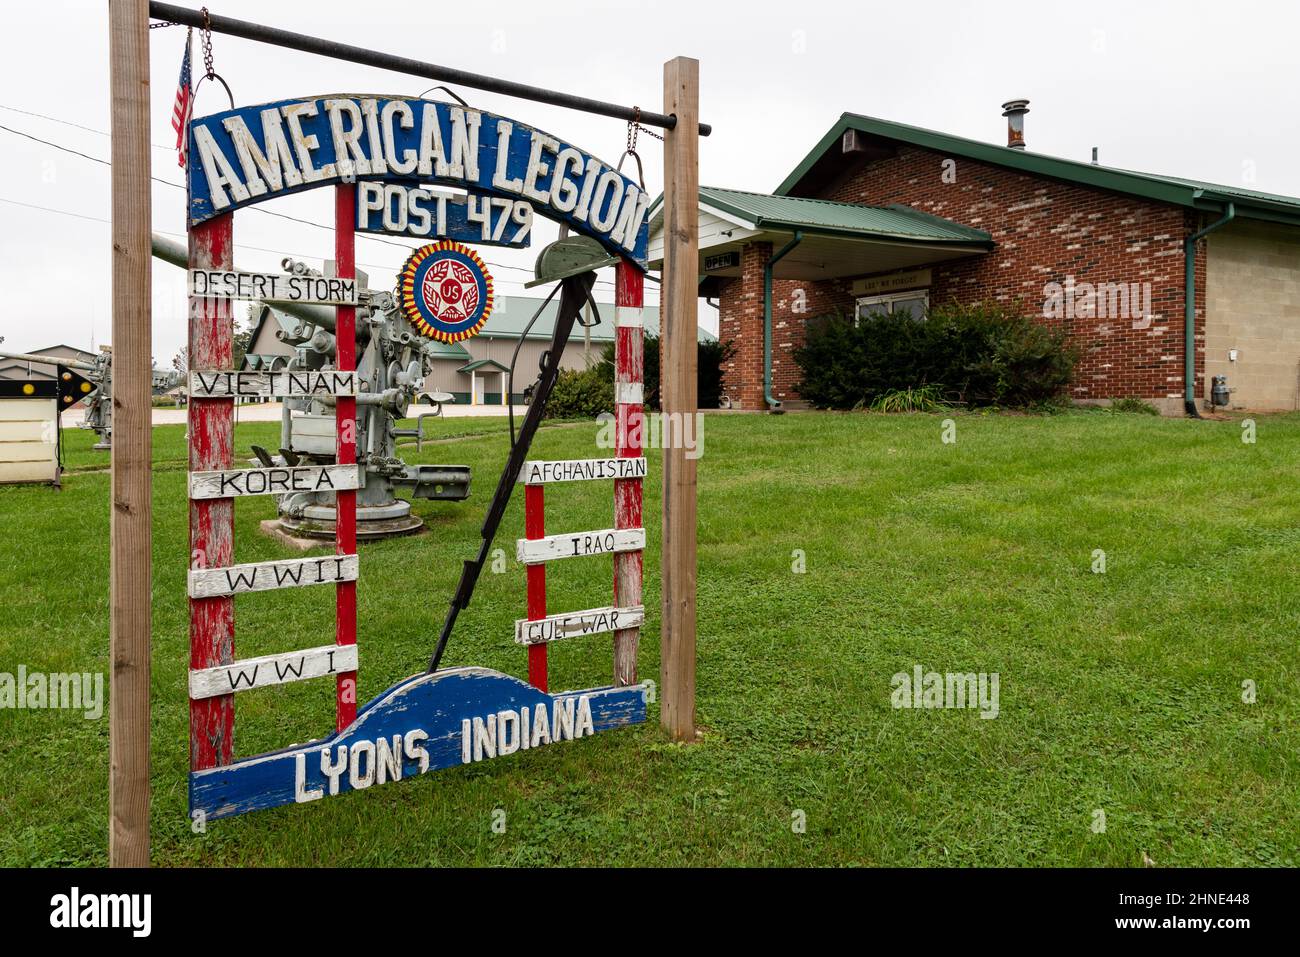 Un signe rouge, blanc et bleu fait de wof pour American Legion Post 479 à Lyon, Indiana. Banque D'Images